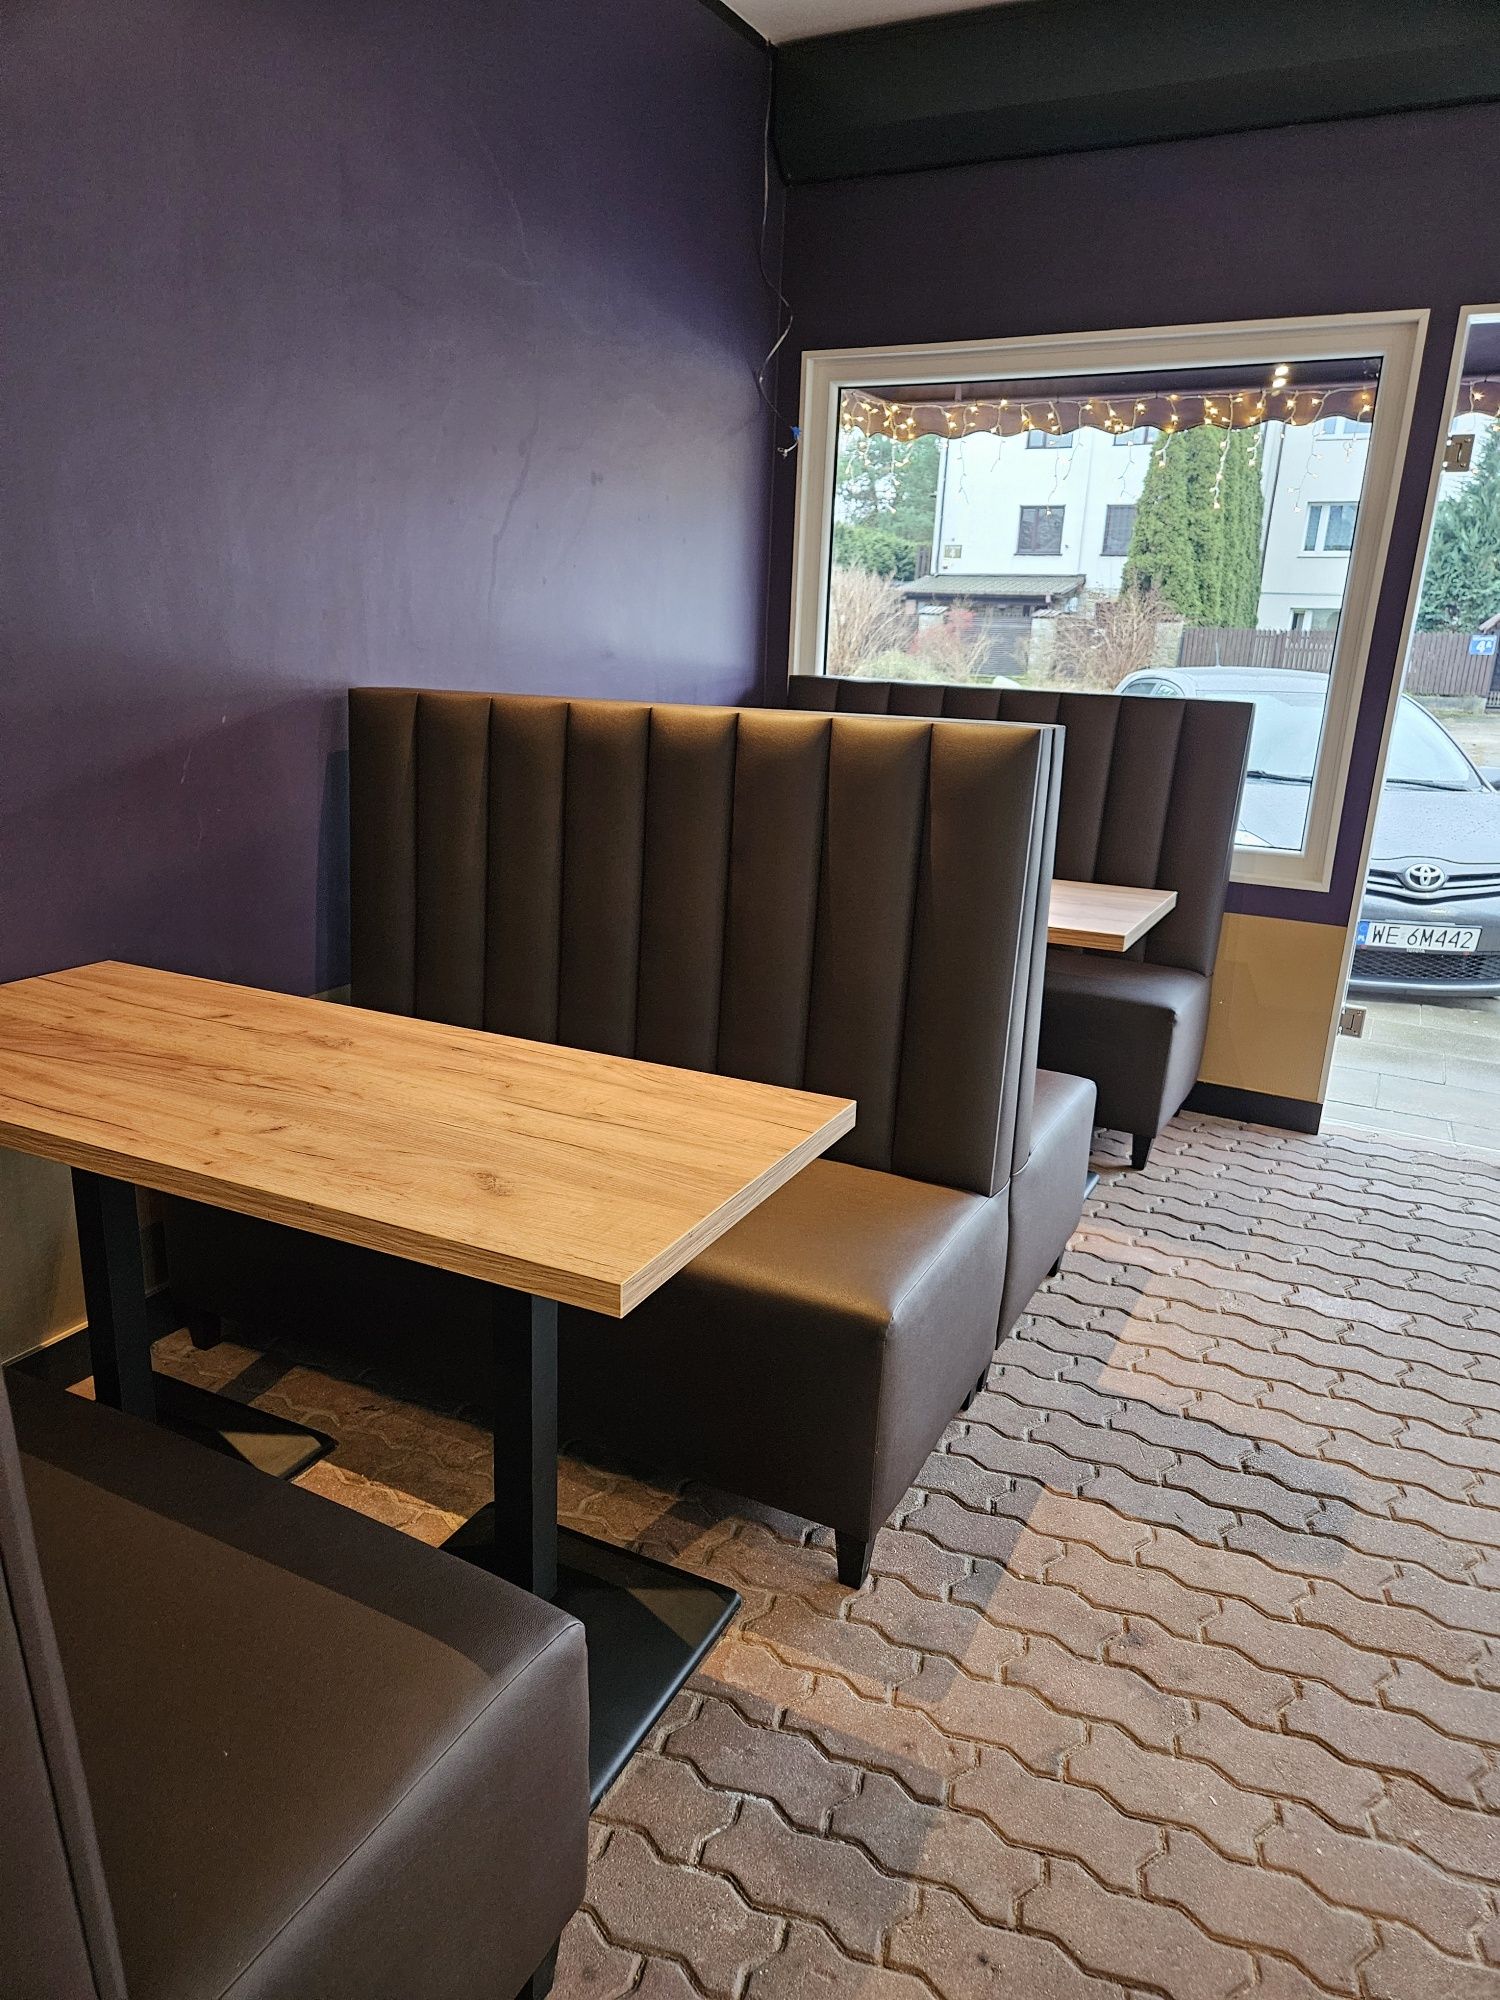 Producent kanapy barowe sofa loża na wymiar do baru klubu restauracji